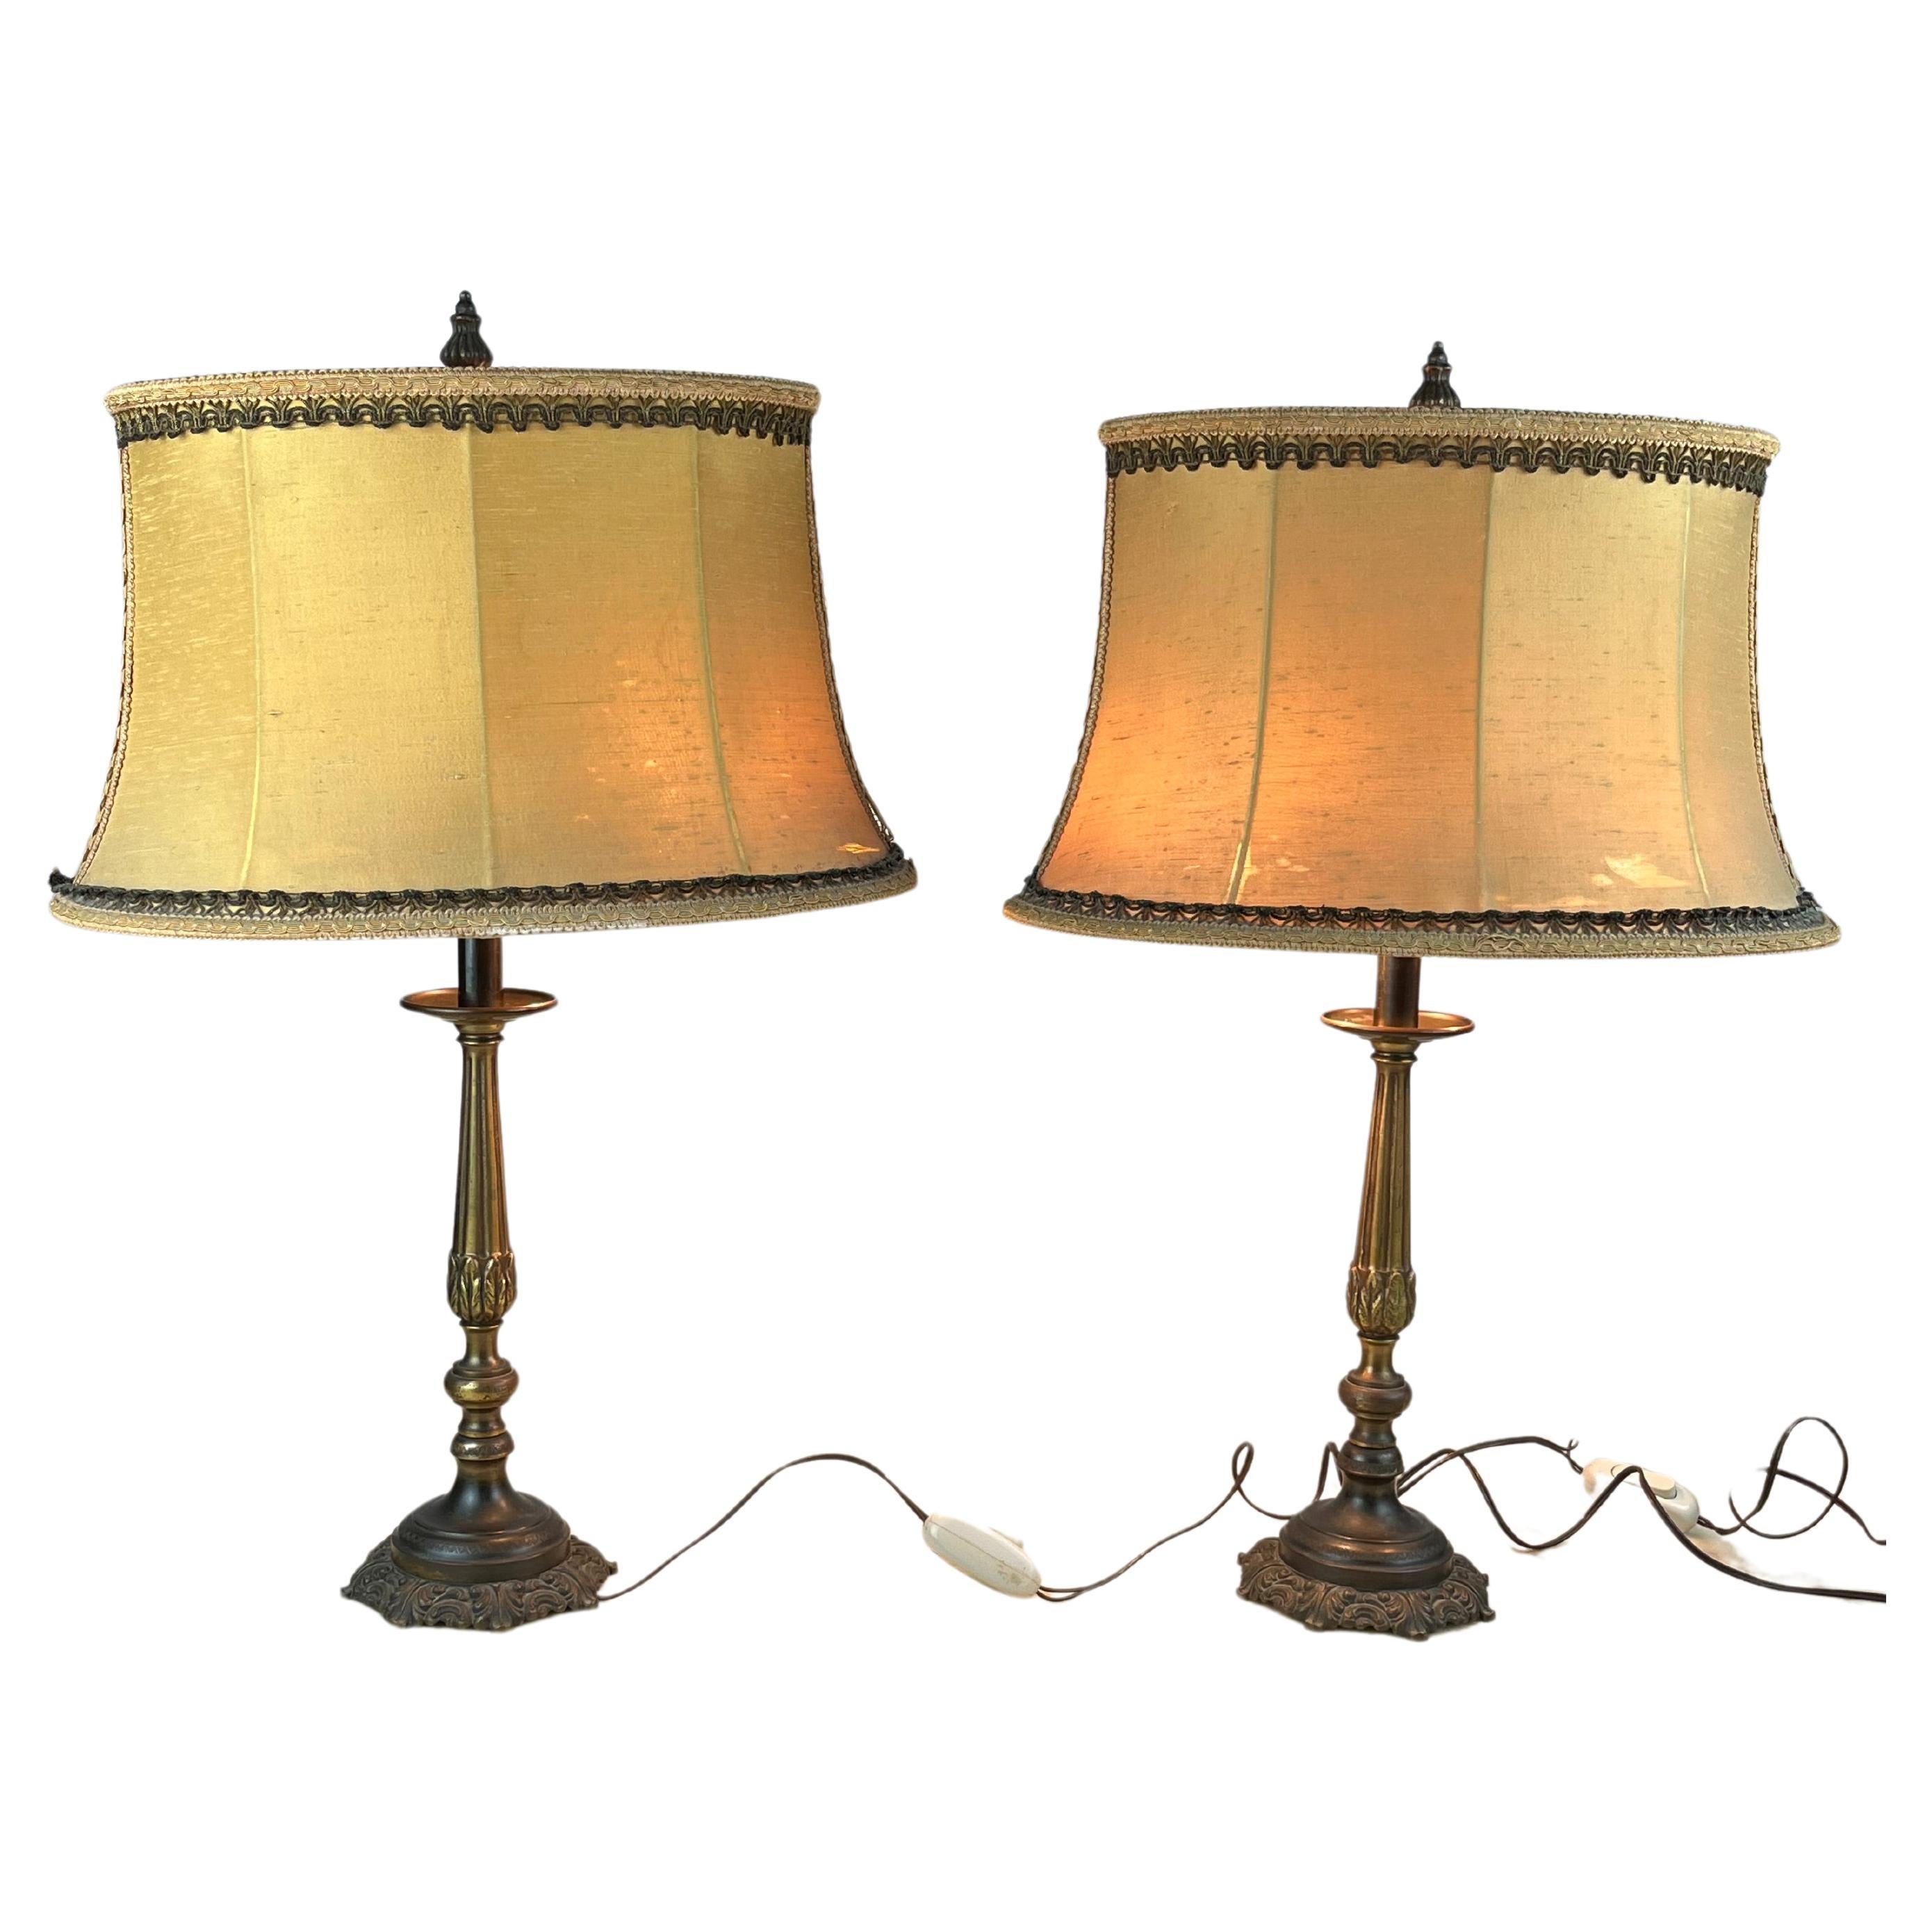 Paire de lampes de table/de chevet en bronze, Italie, années 1940
Les lampes sont en bon état, les abat-jour devraient être remplacés.
Ils fonctionnent avec des lampes et 27.
